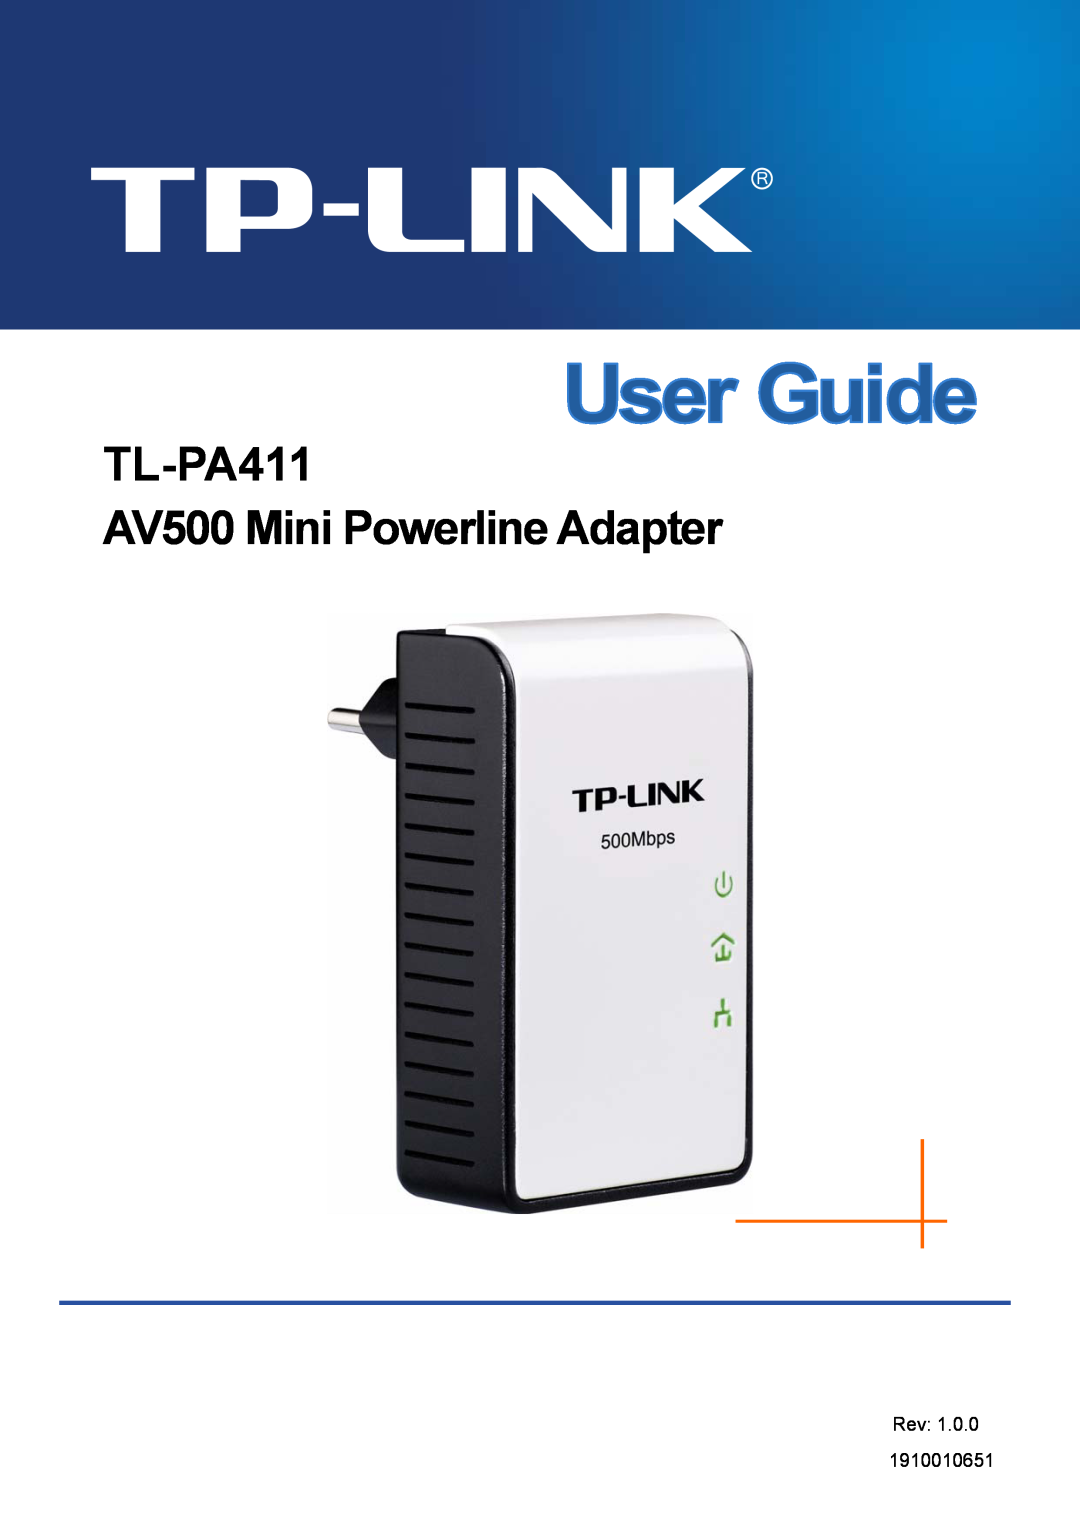 TP-Link manual TL-PA411 AV500 Mini Powerline Adapter, Rev 1910010651 